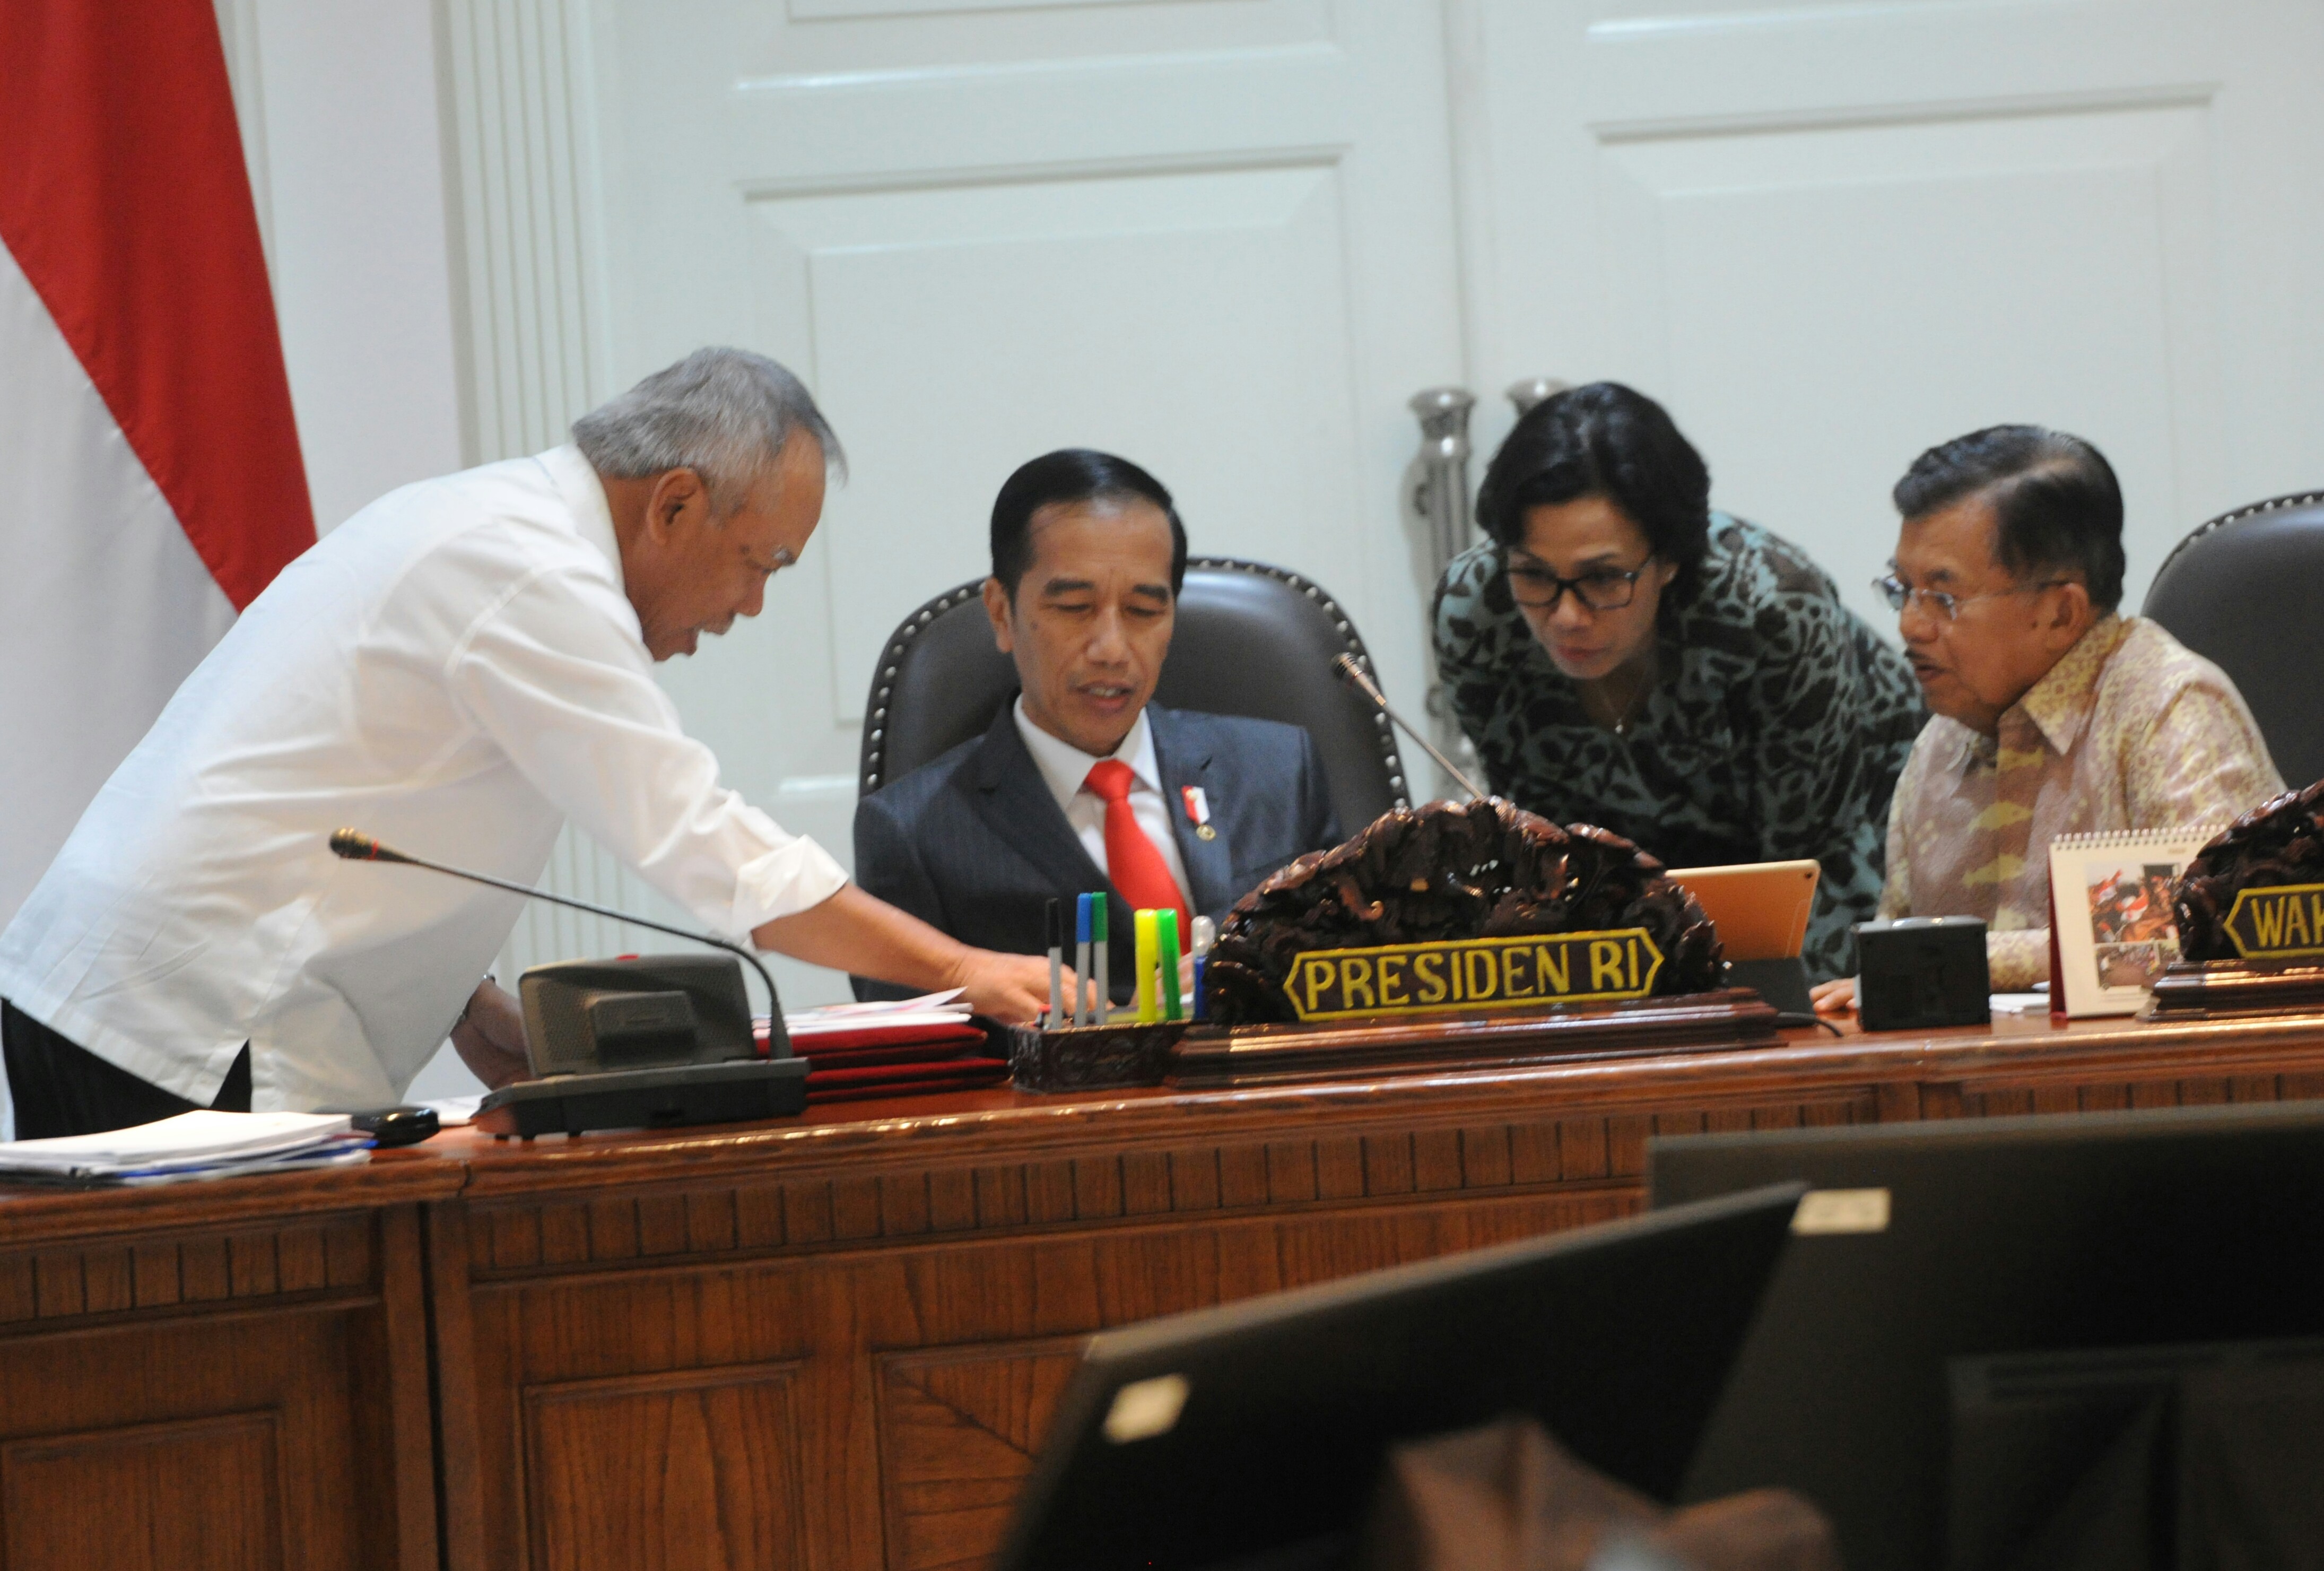 Presiden Jokowi berdiskusi dengan Wapres, Menkeu, dan Menteri PUPR sebelum dimulainya Rapat Terbatas tentang Pembiayaan Keuangan di Kantor Presiden, Jakarta, Selasa (11/4). (Foto: Humas/Rahmat)